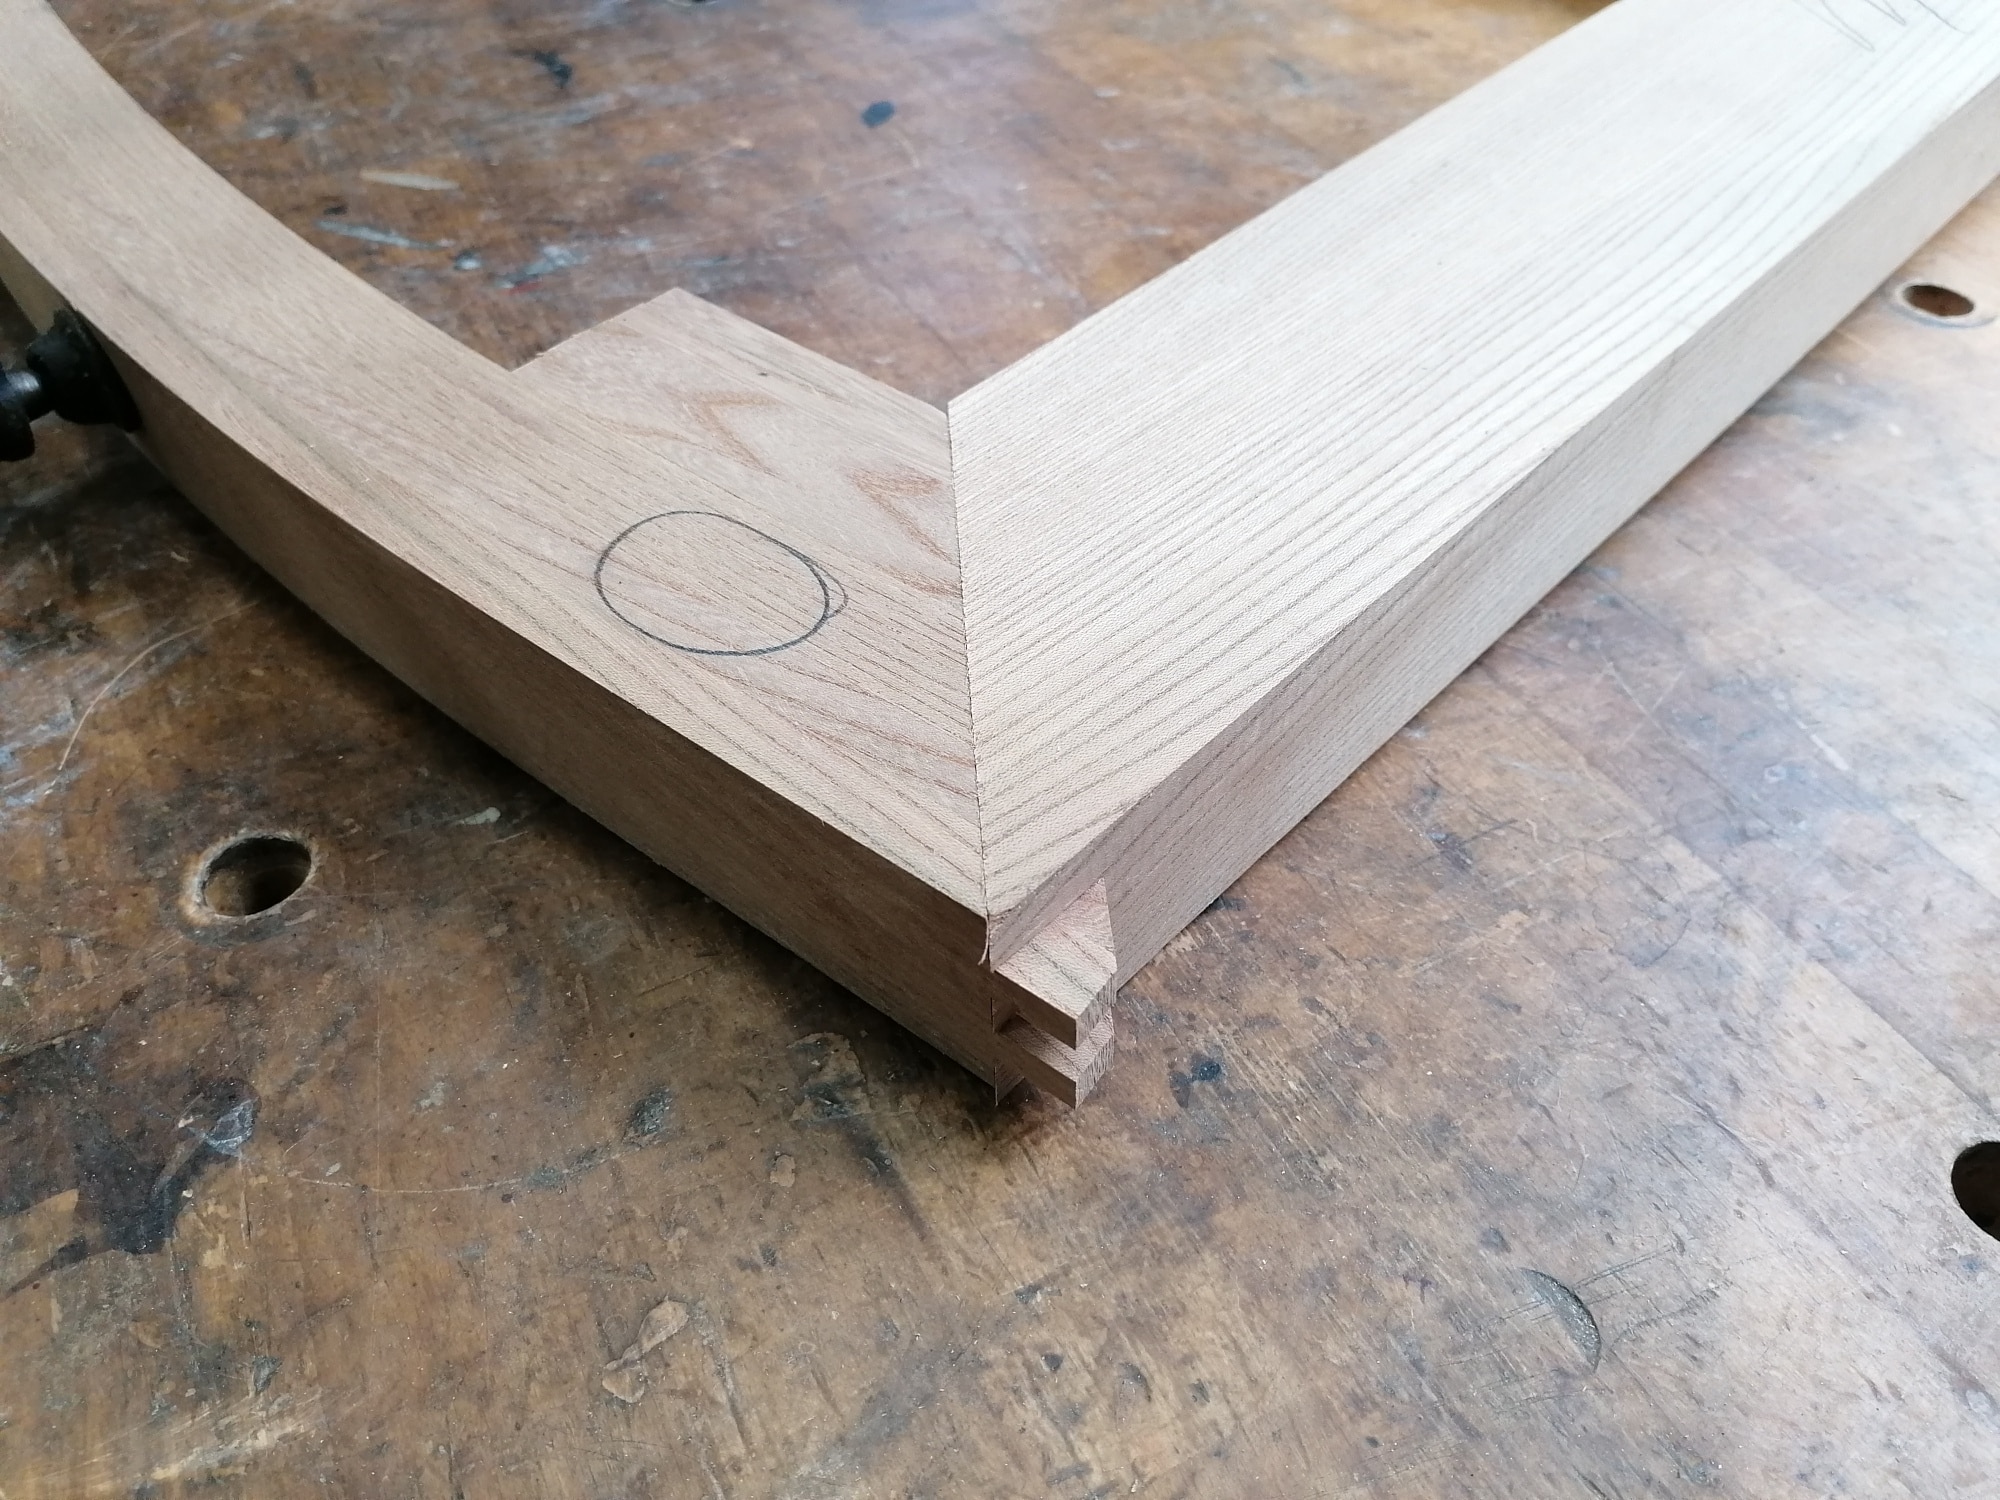 Die Holzverbindung von Kufe und Beinteil ist passgenau gefertigt